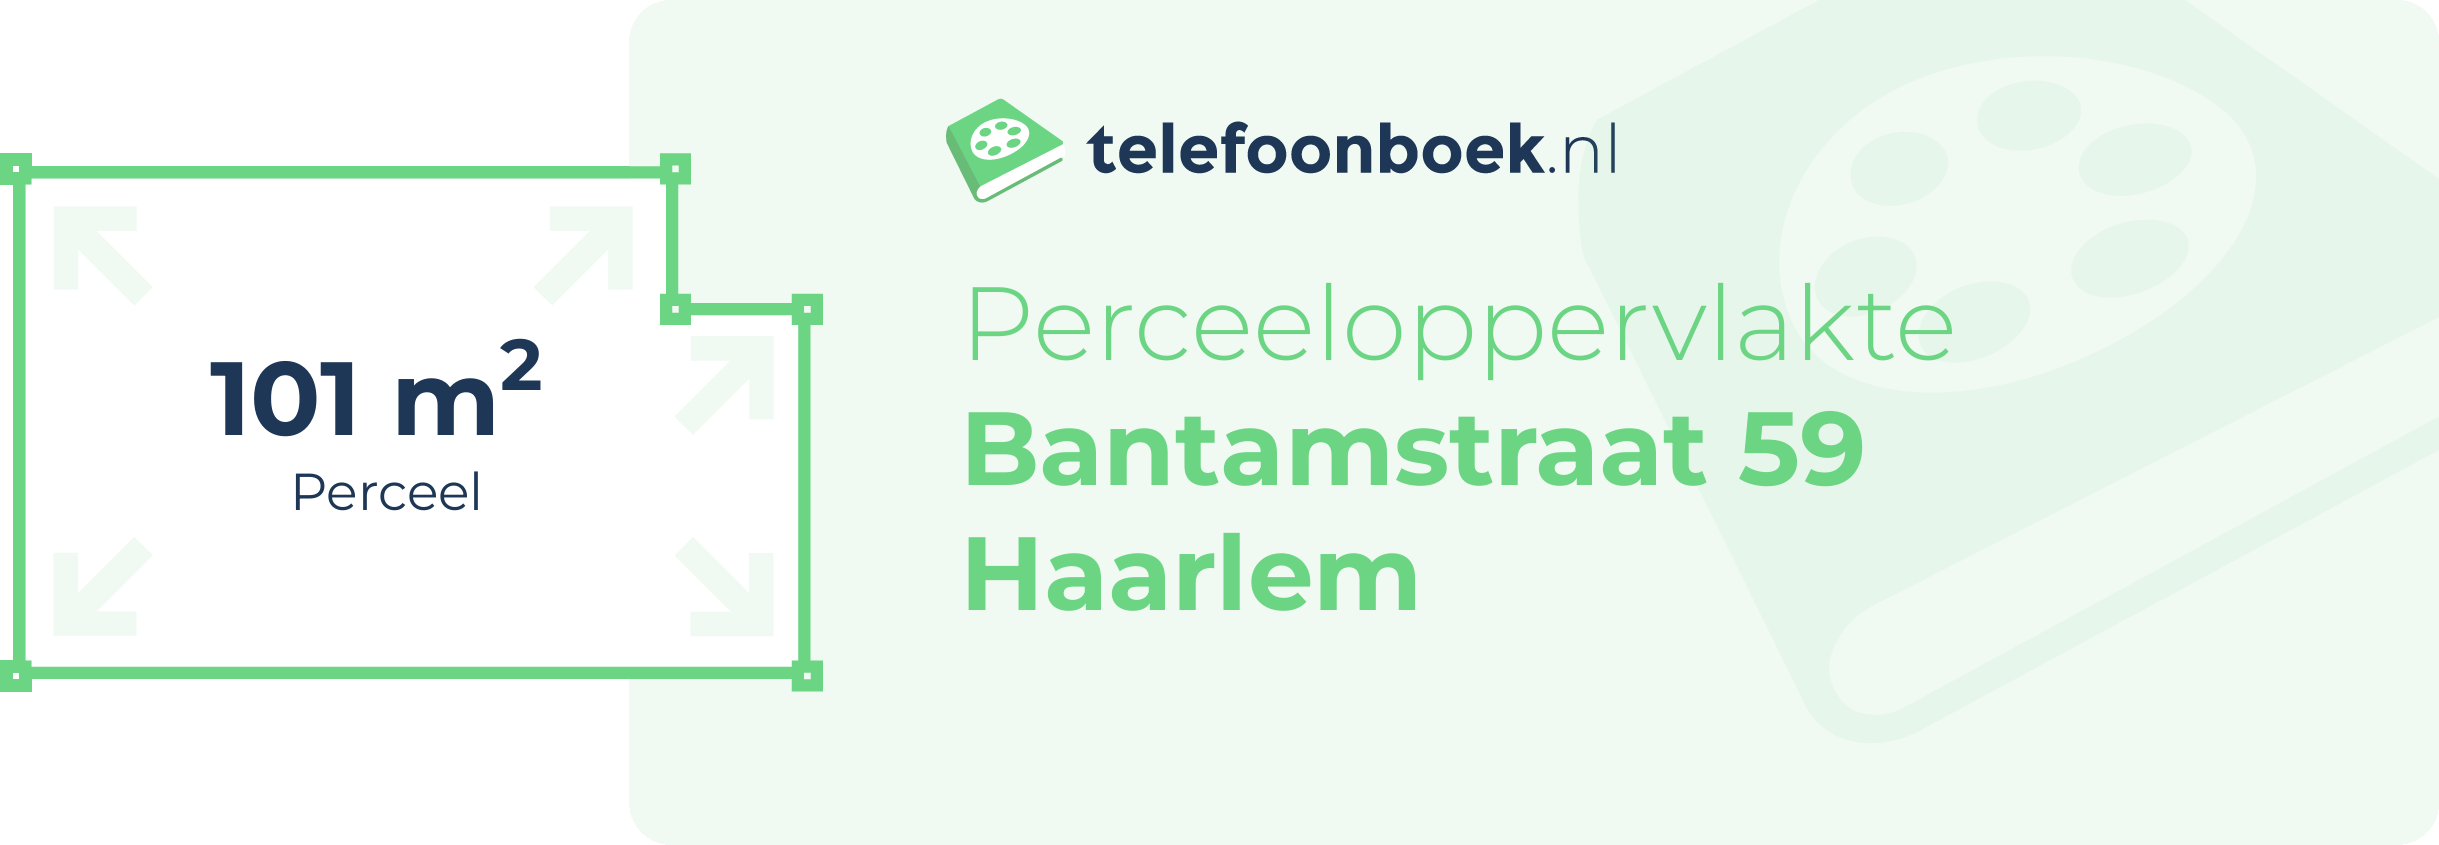 Perceeloppervlakte Bantamstraat 59 Haarlem